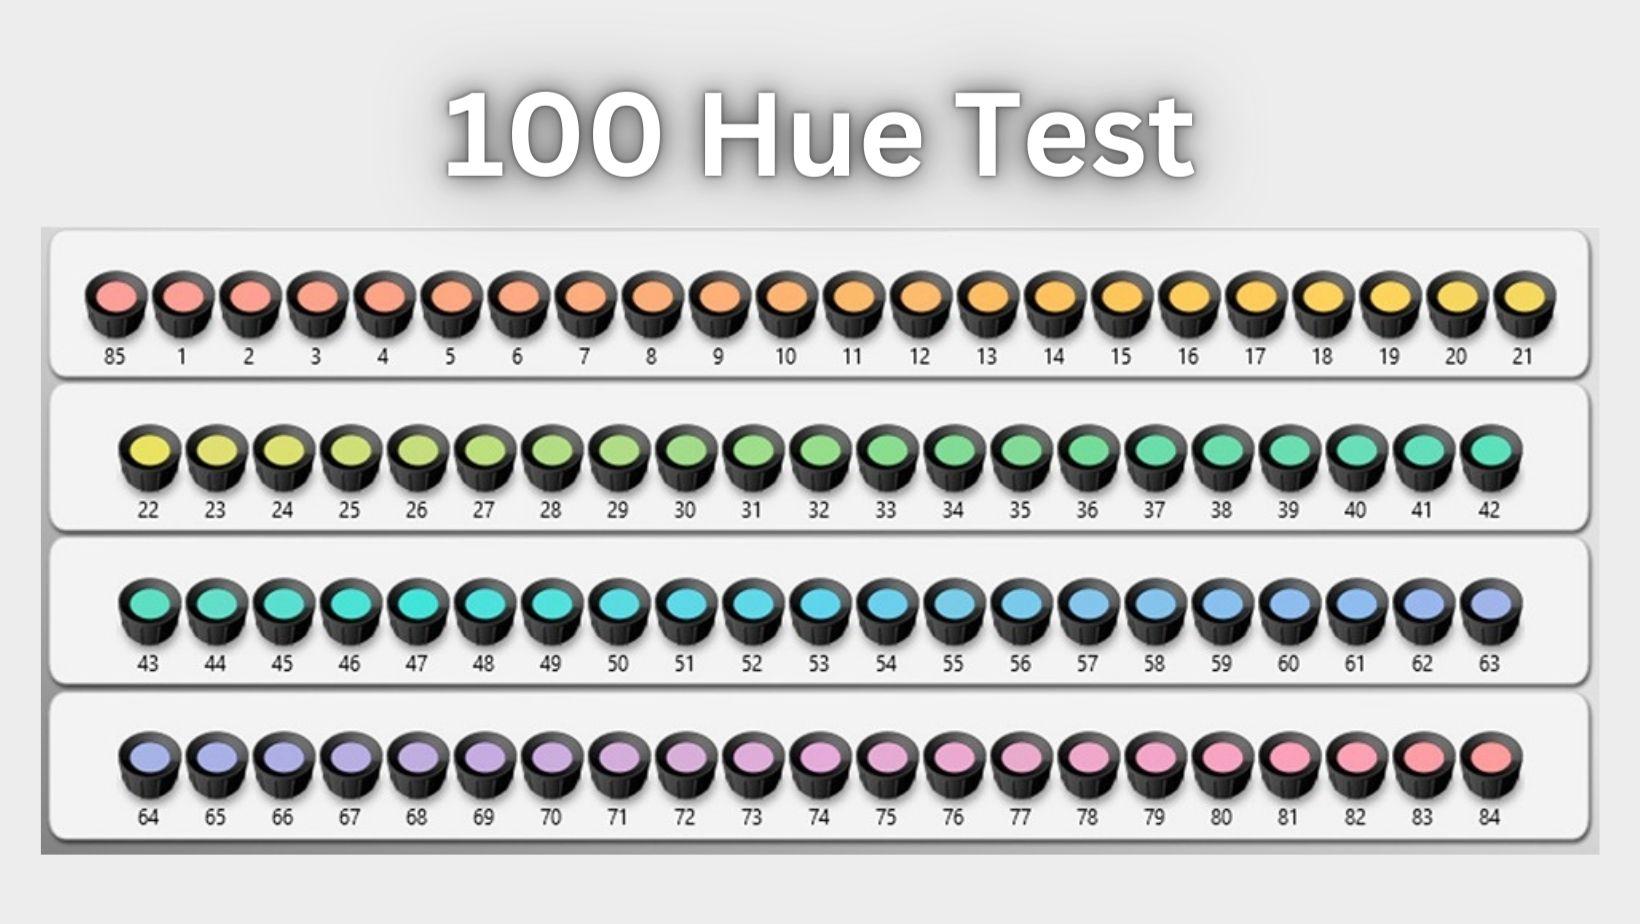 100 hue test